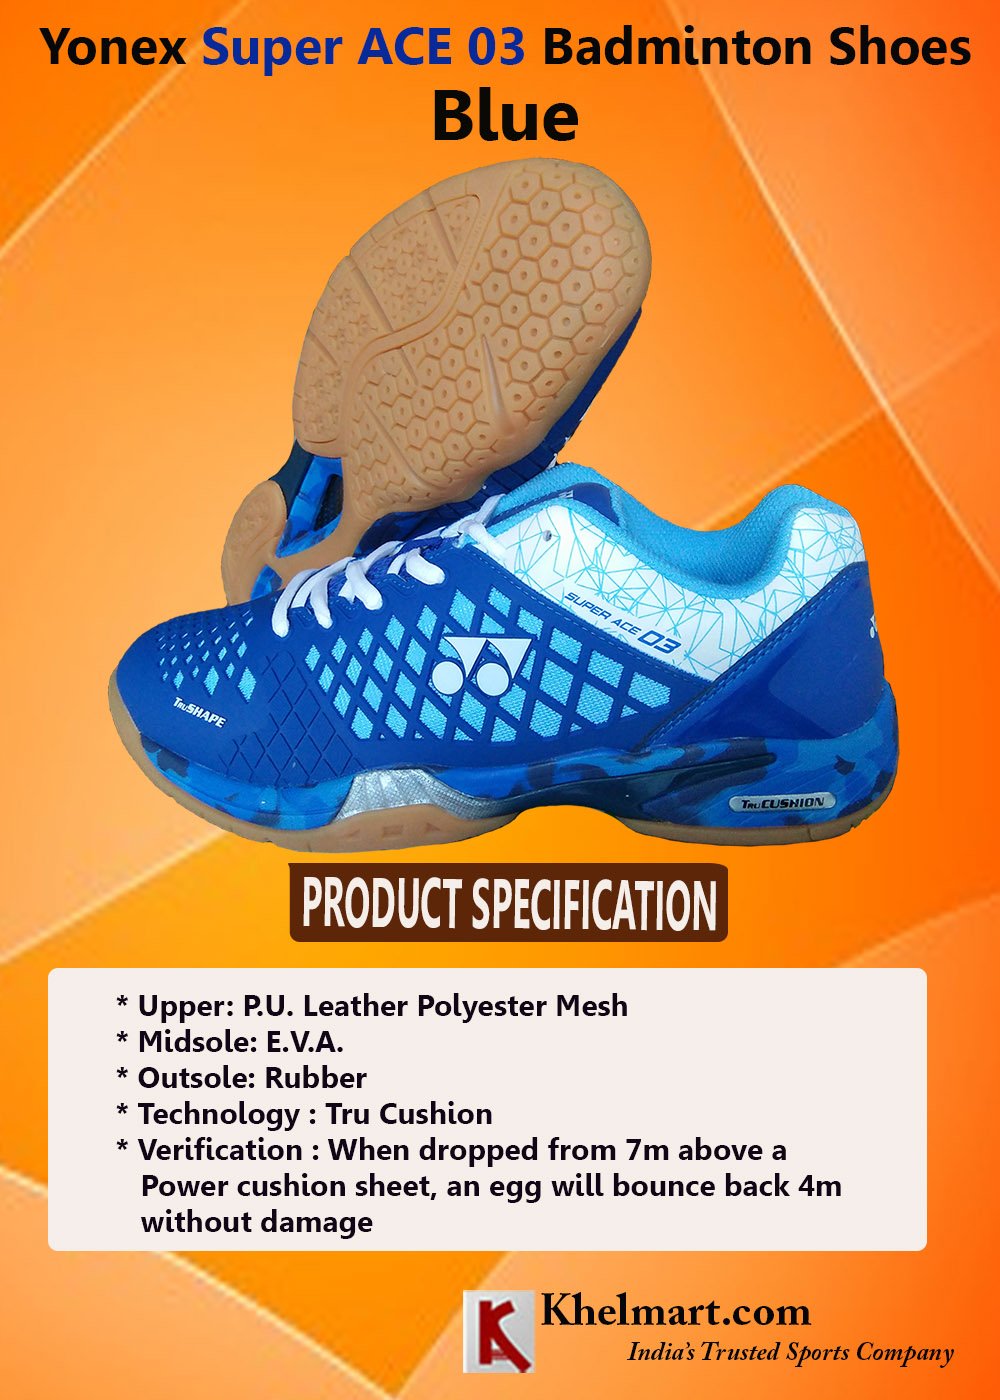 Yonex-Super-ACE-03-Badminton-Shoes-Blue_1.jpg